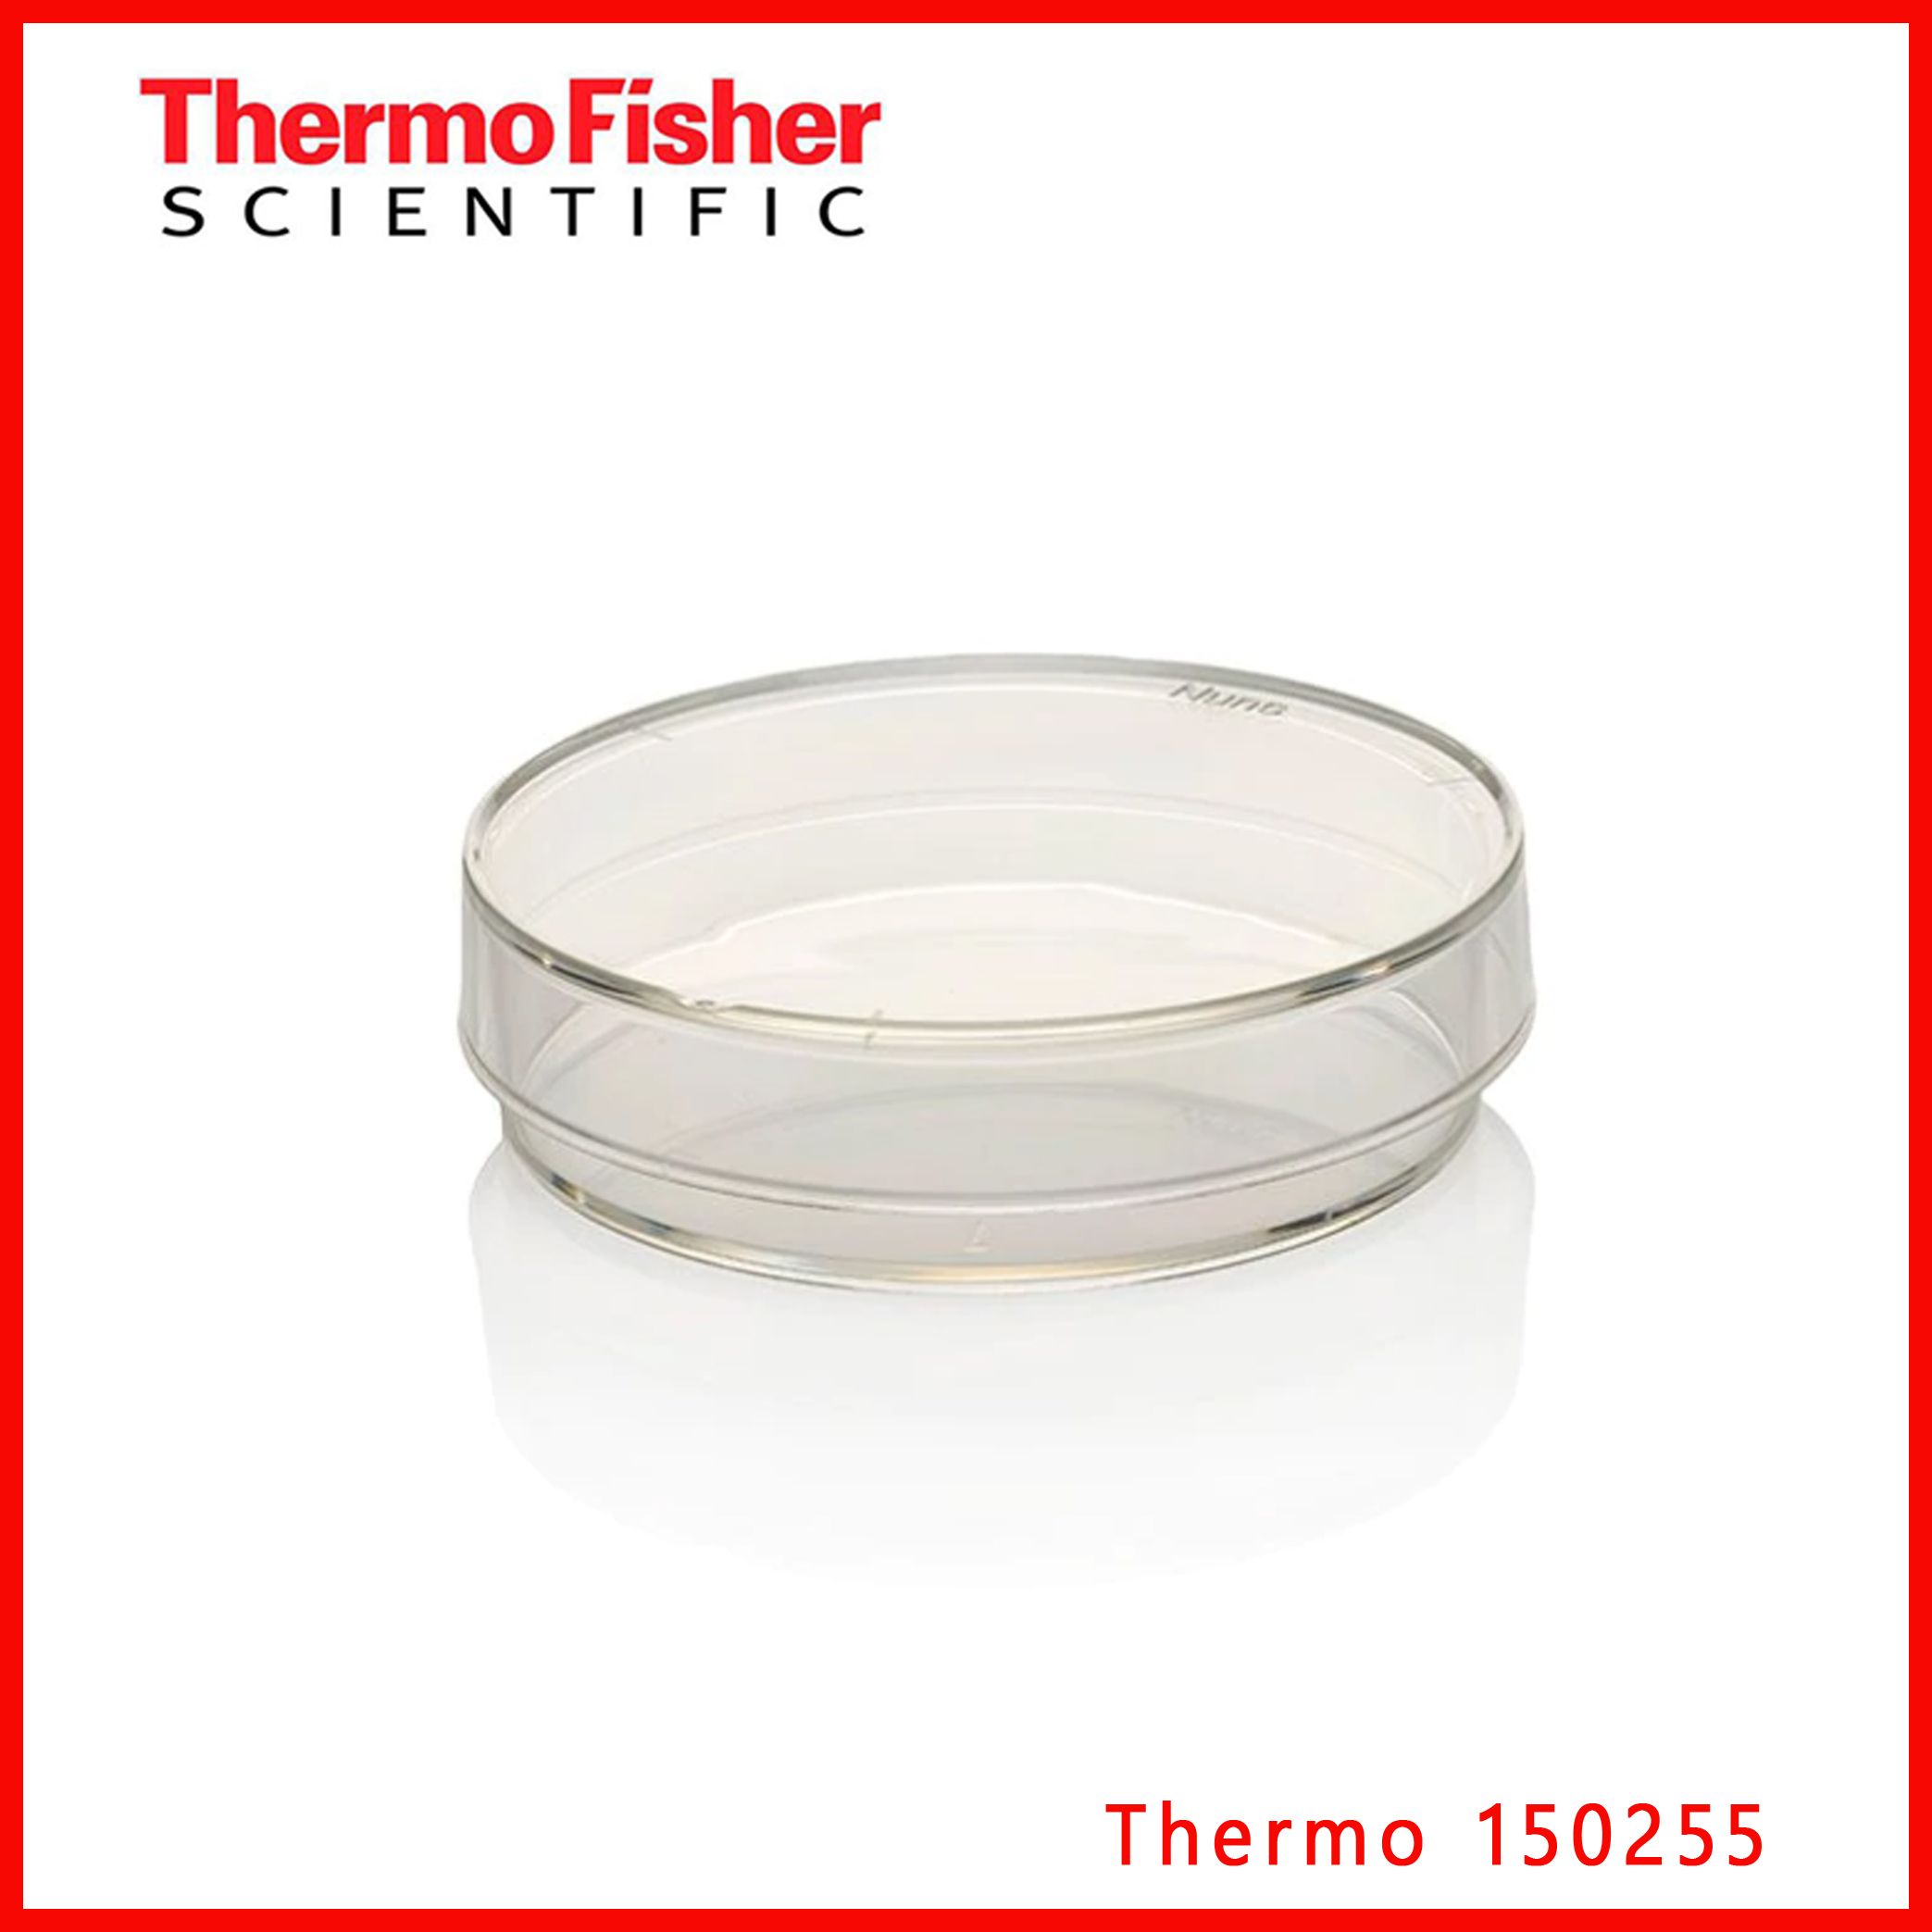 赛默飞Thermo 150255 Scientific™Nunc™ IVF 培养皿，现货